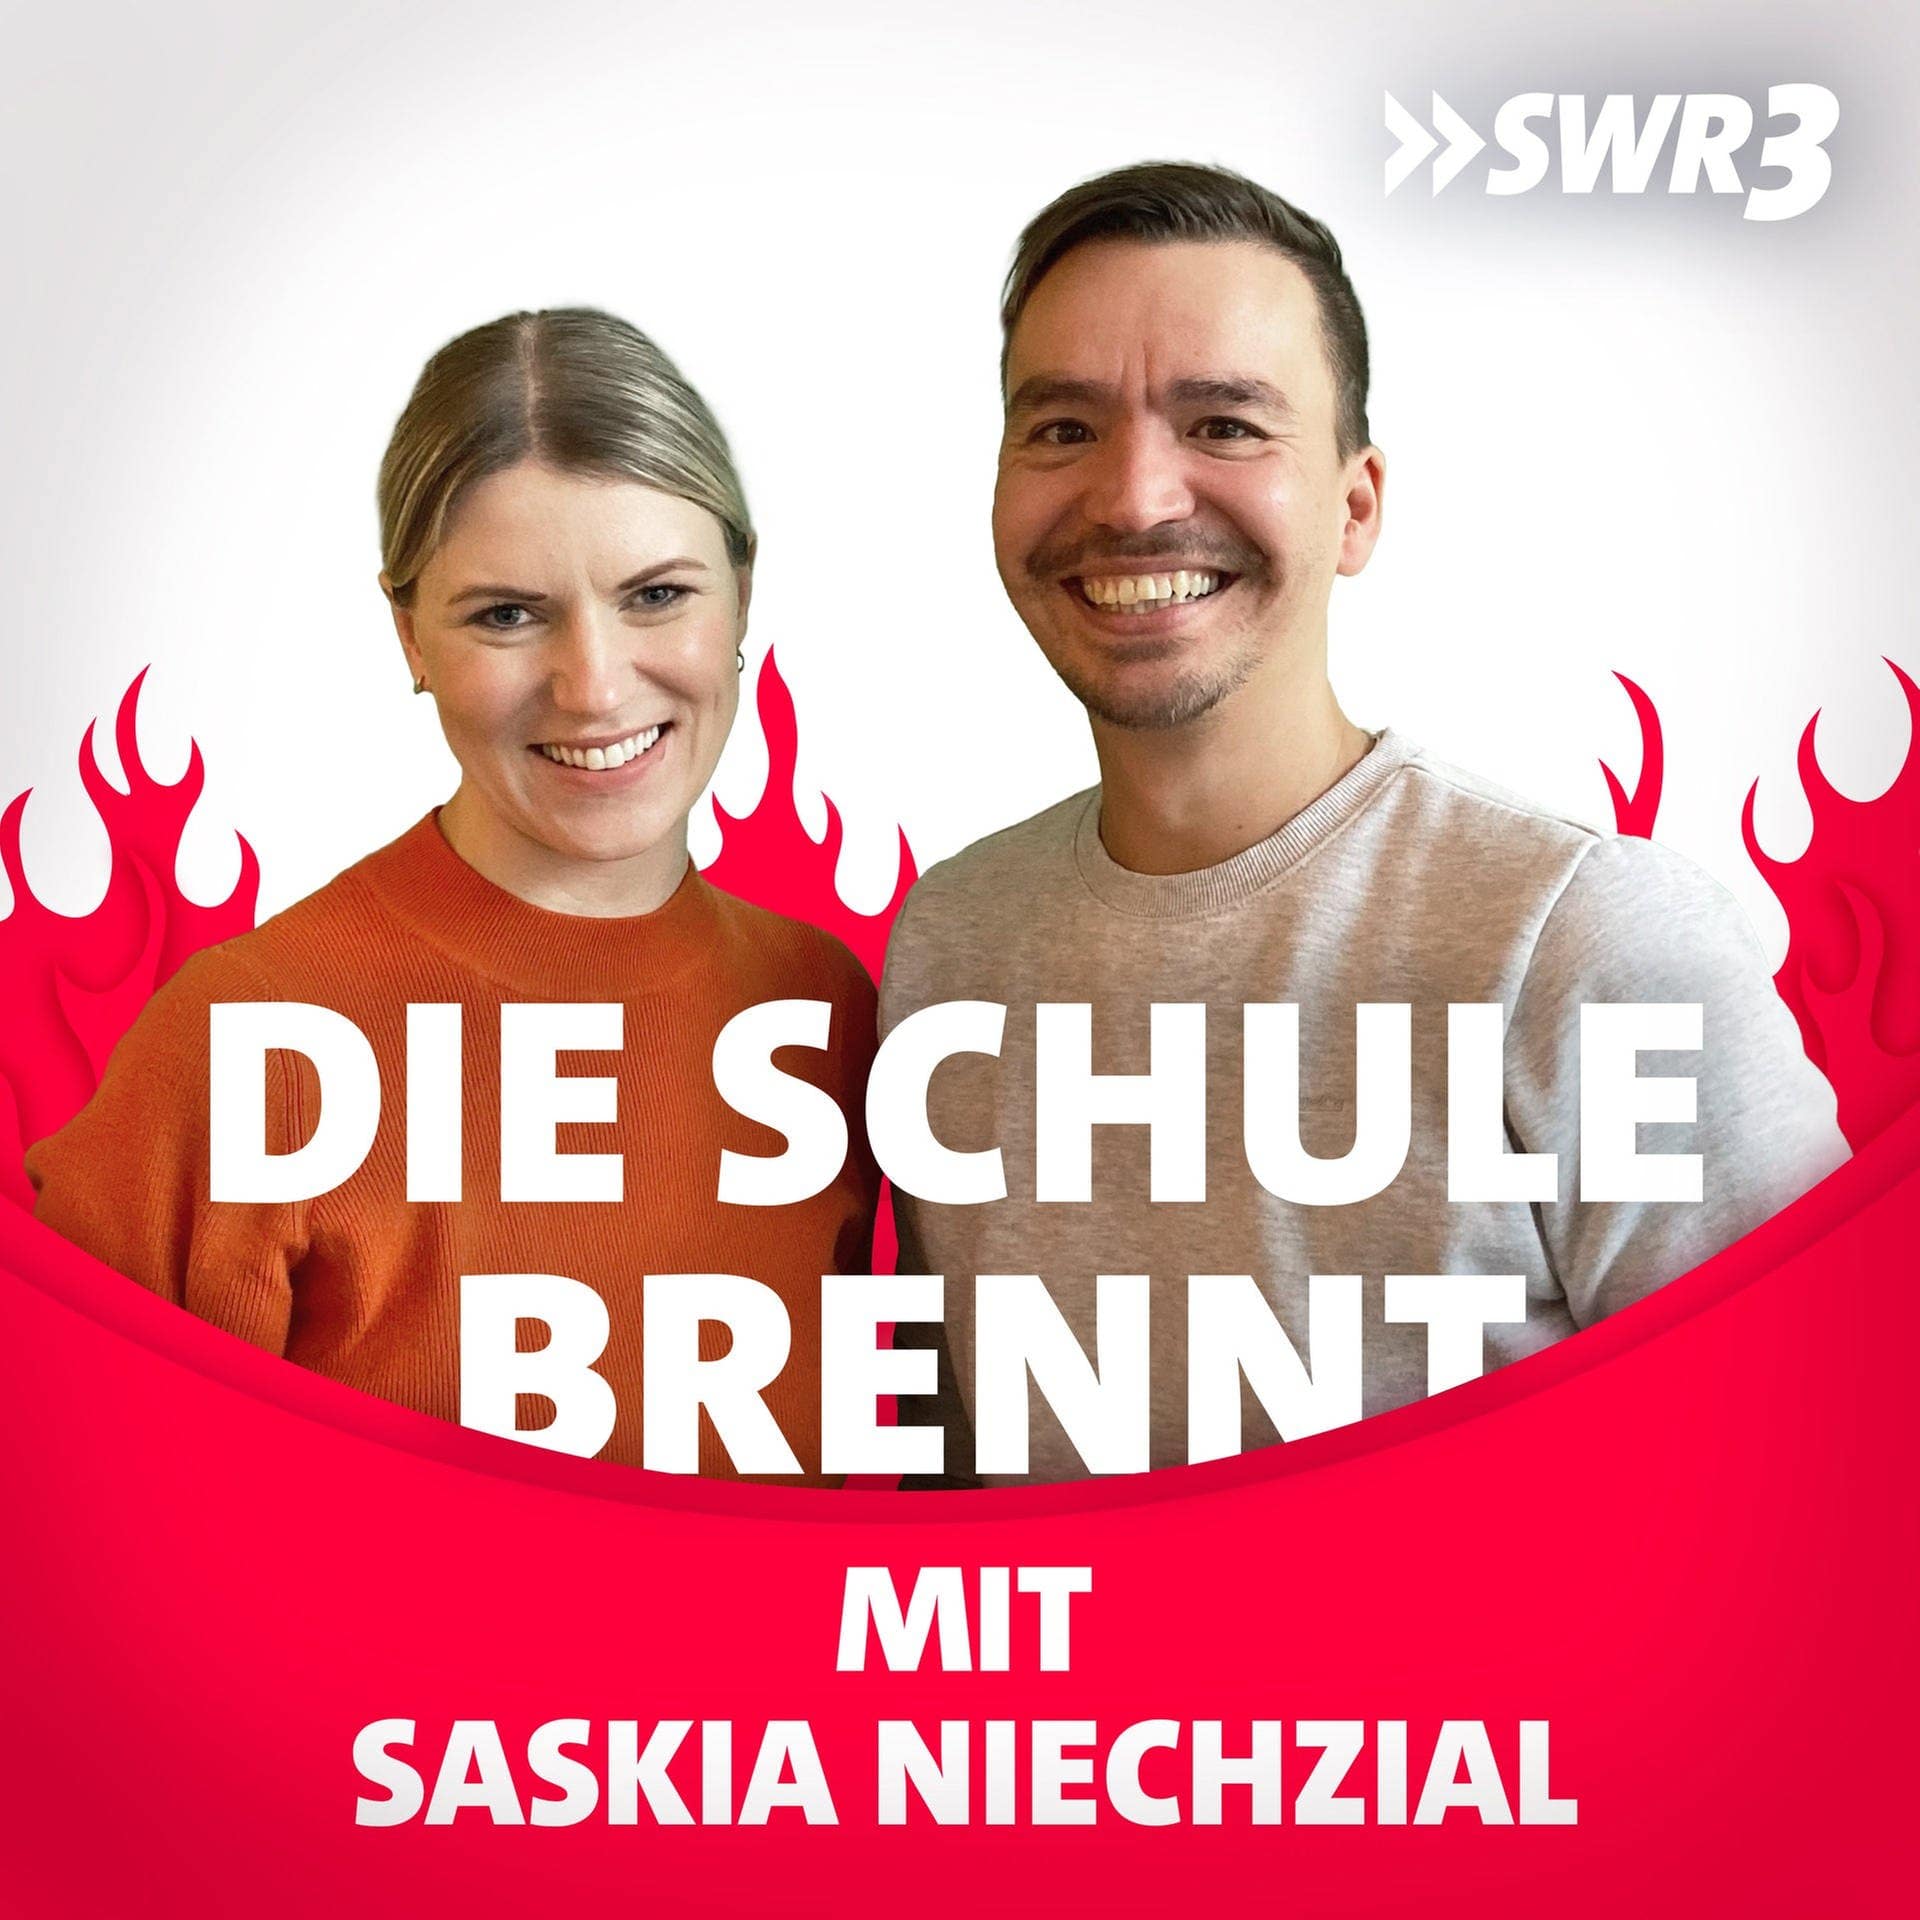 Saskia Niechzial und Bob Blume vor Flammen (Foto: SWR3)